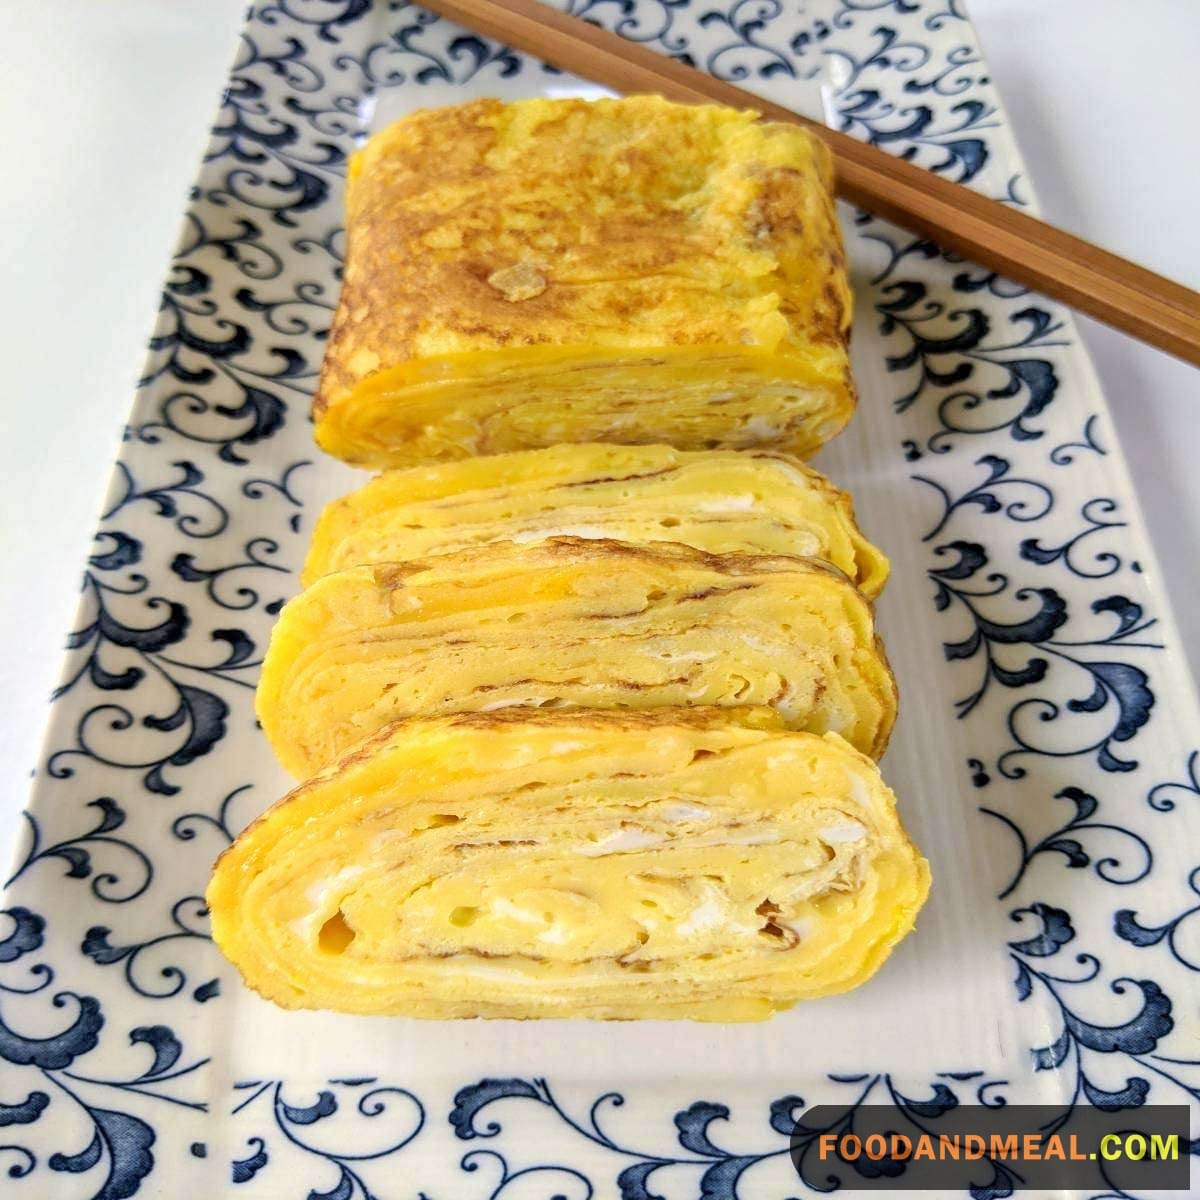 How to make Tamagoyaki - Japanese Egg Omelets 16